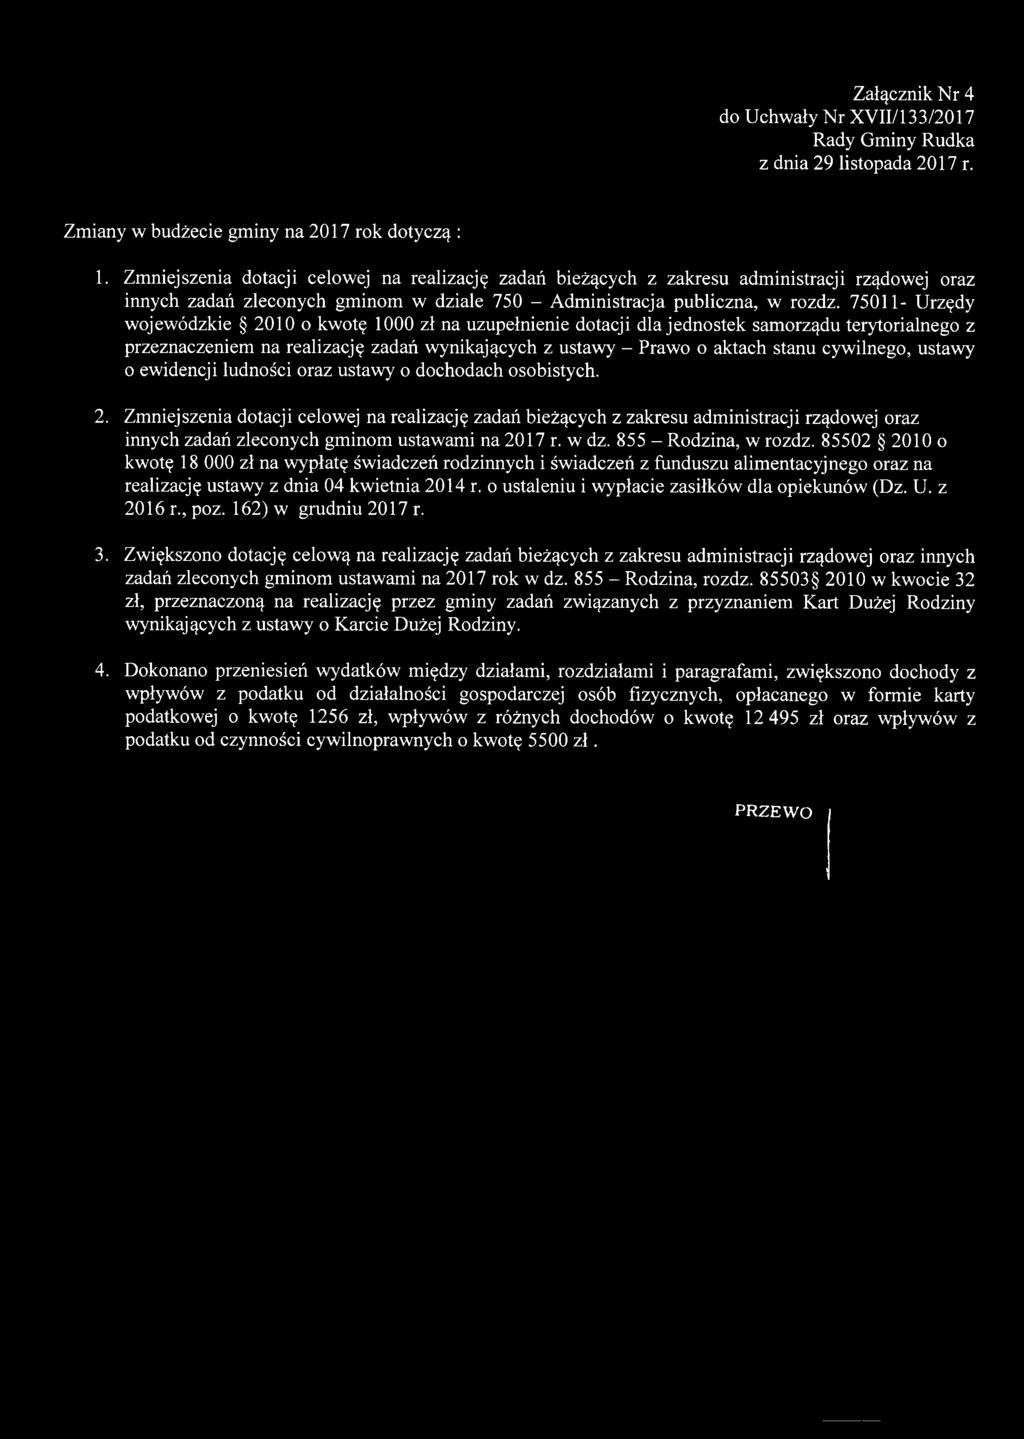 75011- Urzędy wojewódzkie 2010 o kwotę 1000 zł na uzupełnienie dotacji dla jednostek samorządu terytorialnego z przeznaczeniem na realizację zadań wynikających z ustawy - Prawo o aktach stanu